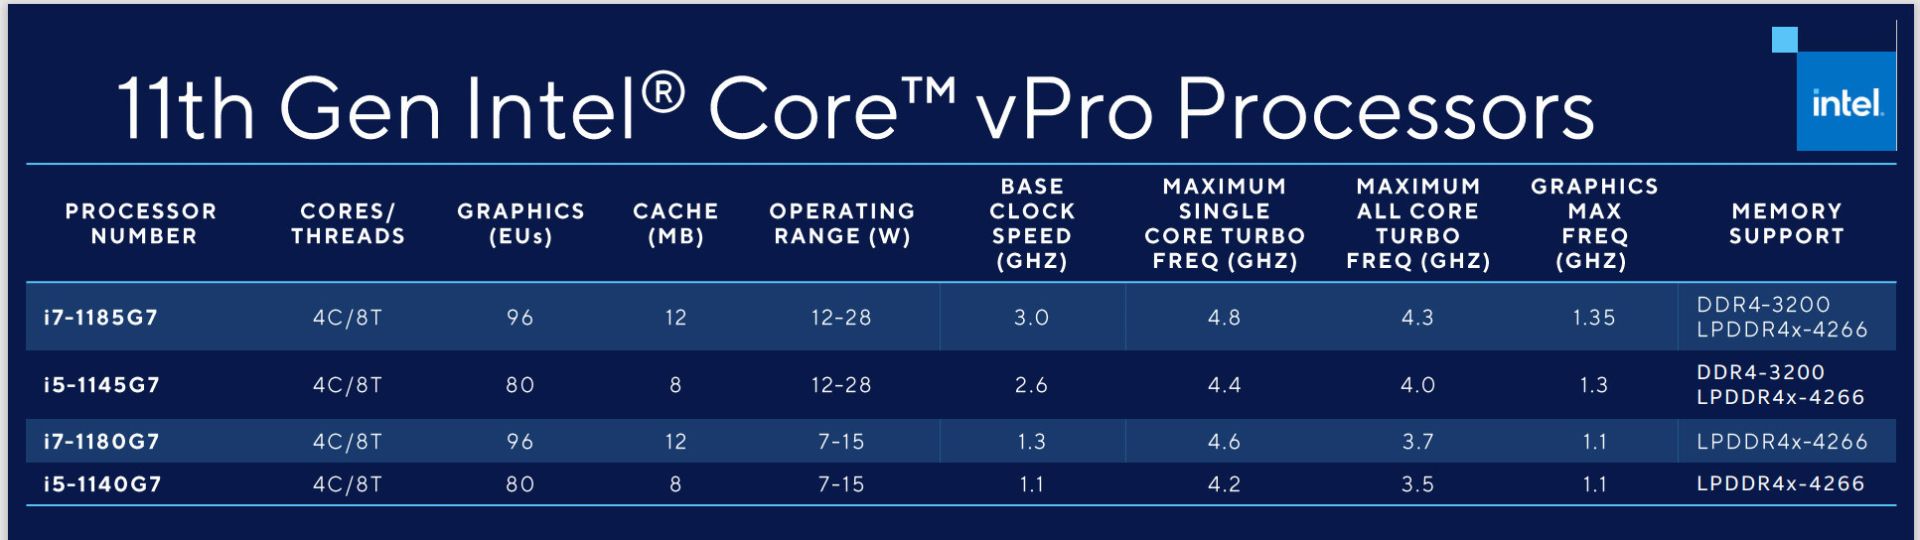 مرجع متخصصين ايران پردازنده هاي نسل 11 اينتل Core vPro